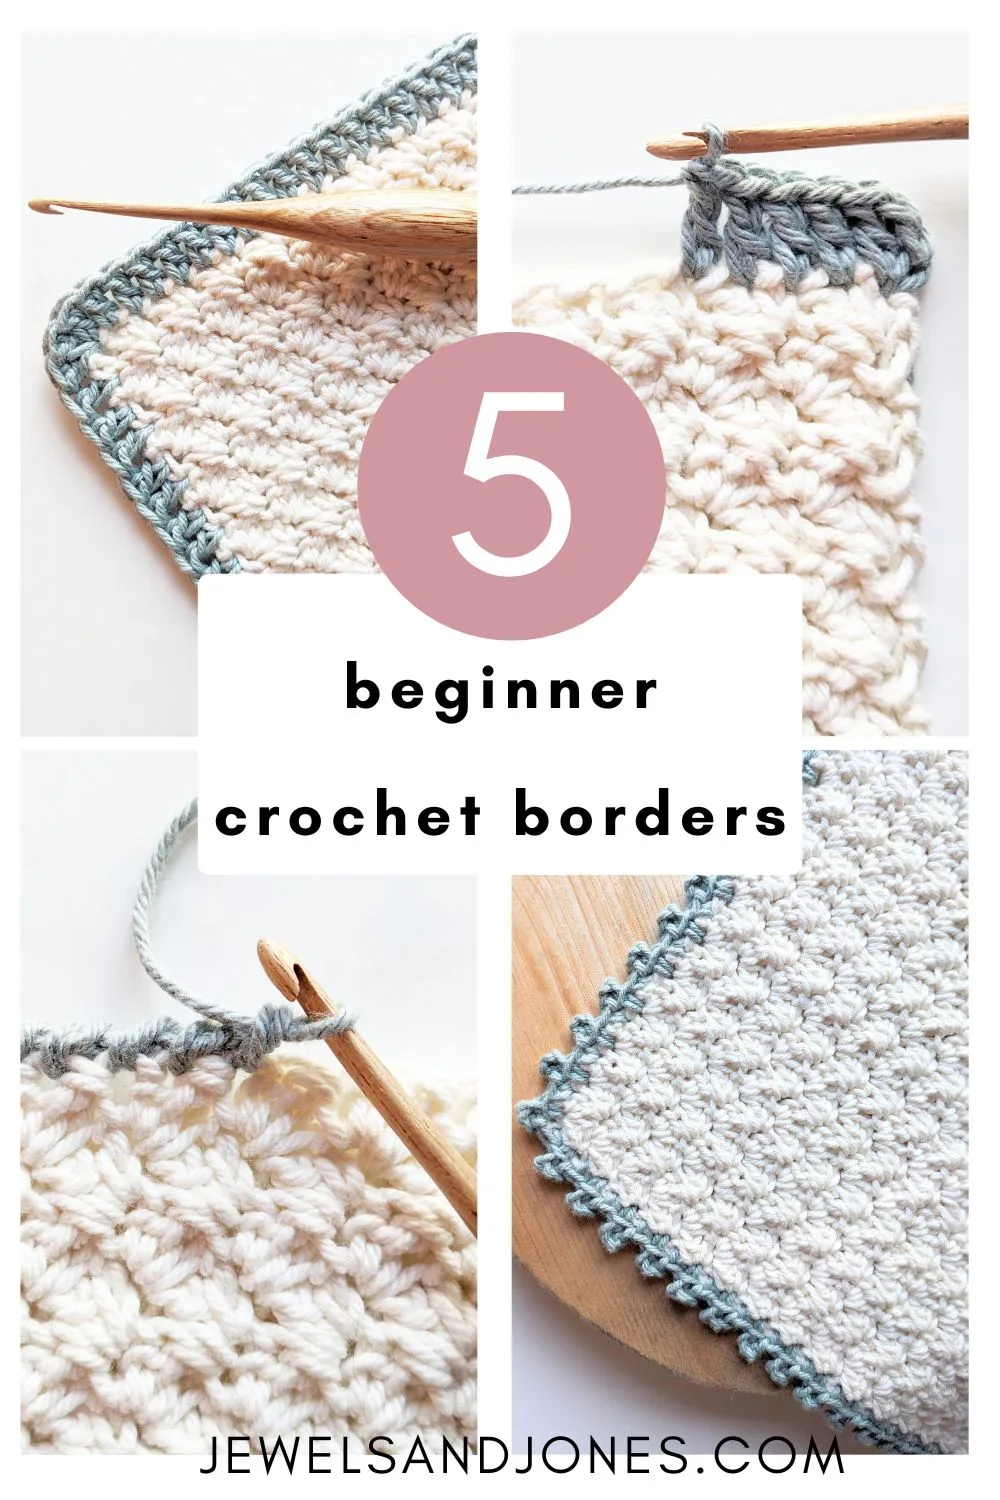 5 beginner crochet borders to make.